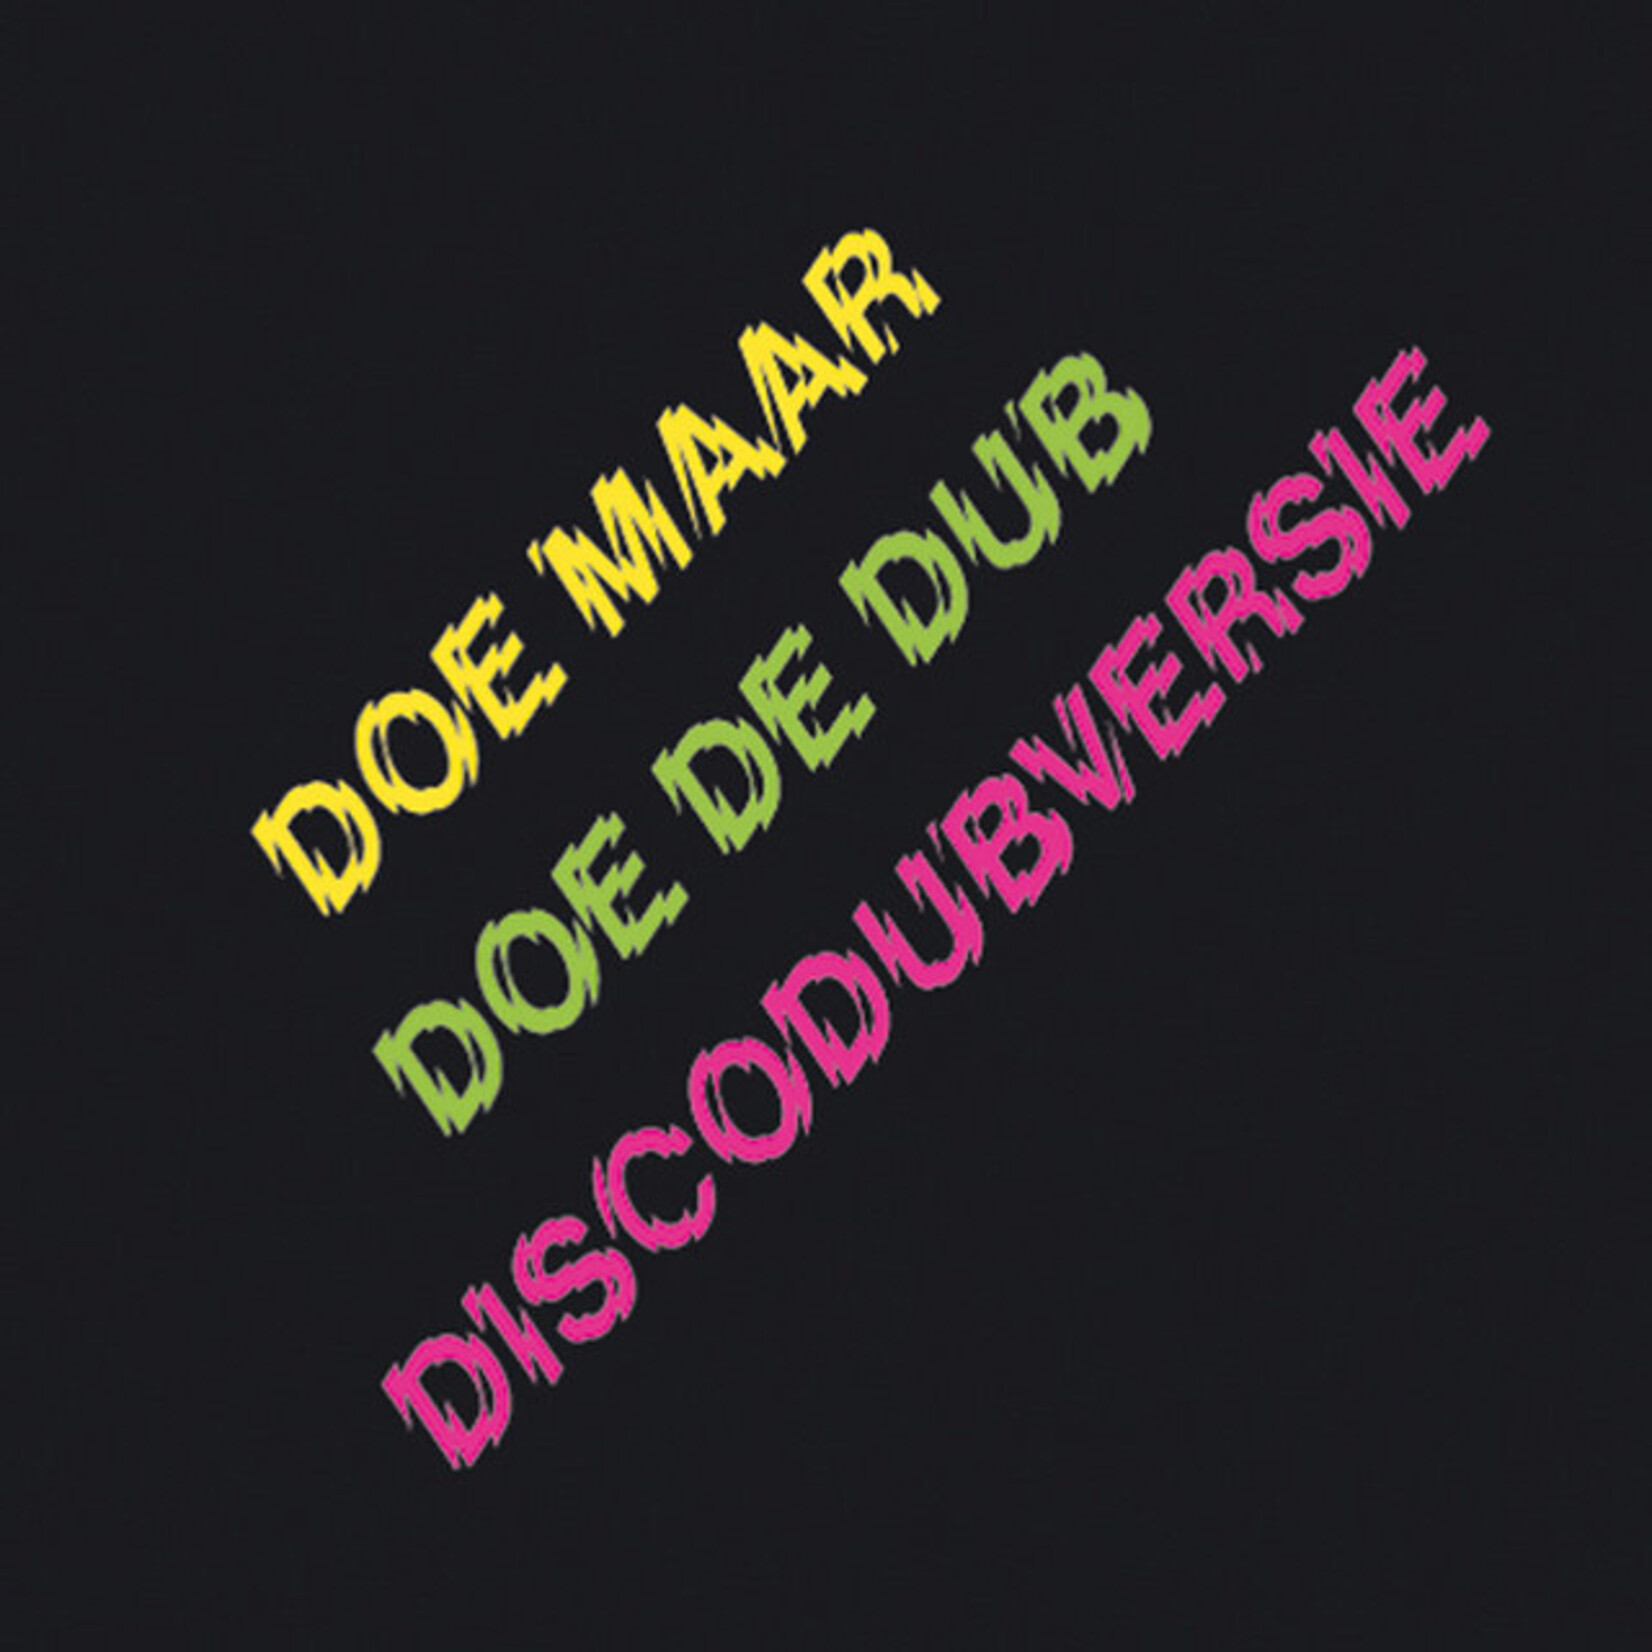 Doe Maar – Doe De Dub (Discodubversie)